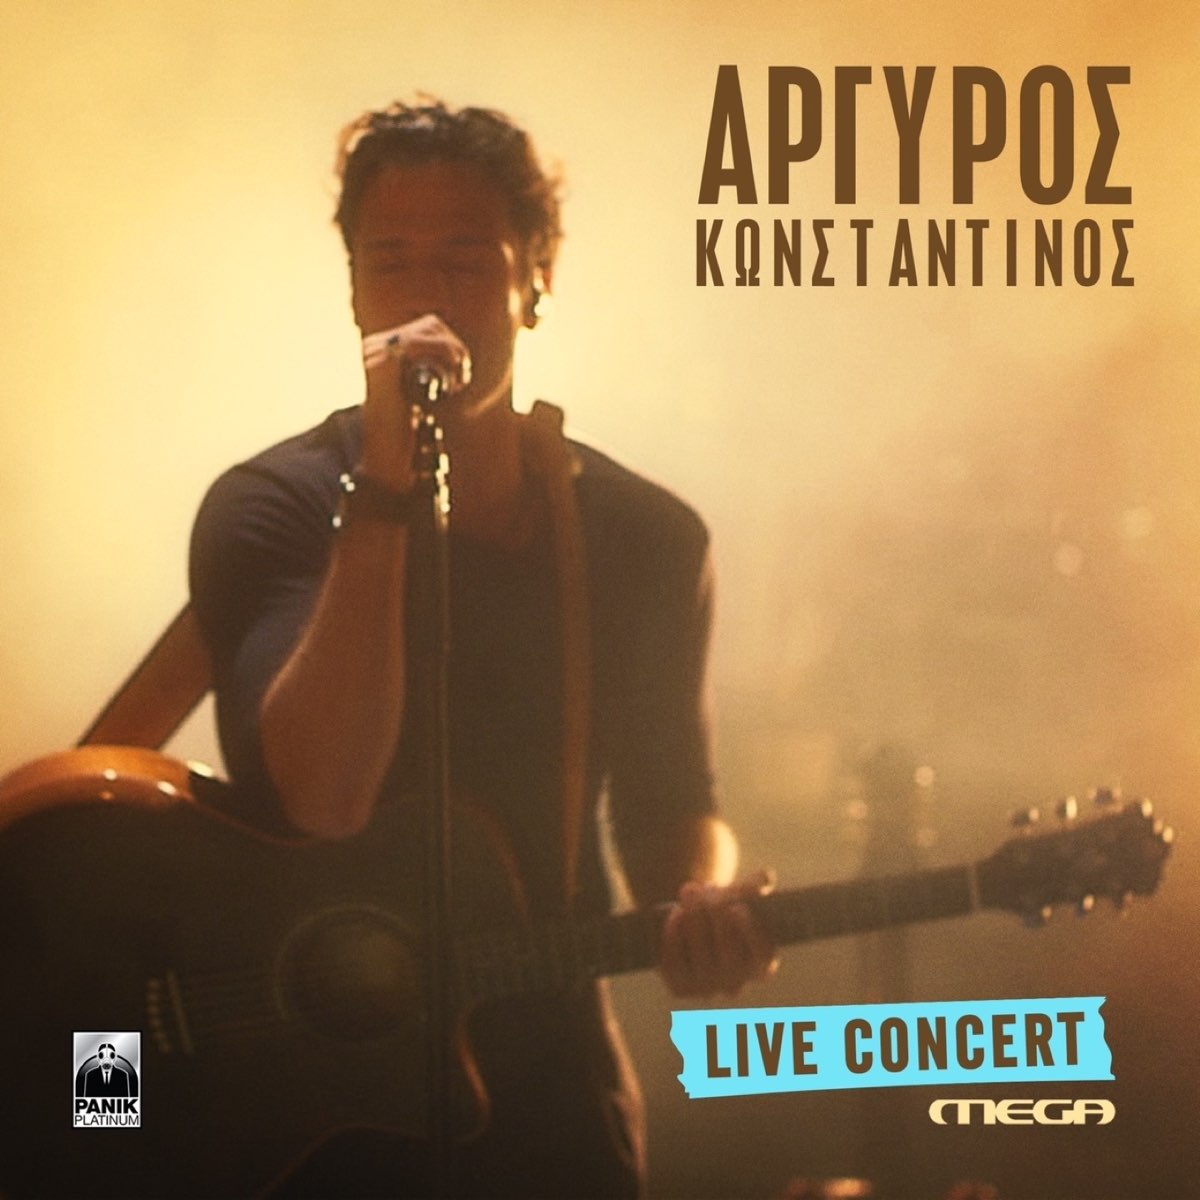 Live Concert (Mega) [Live] by Konstantinos Argiros on Apple Music